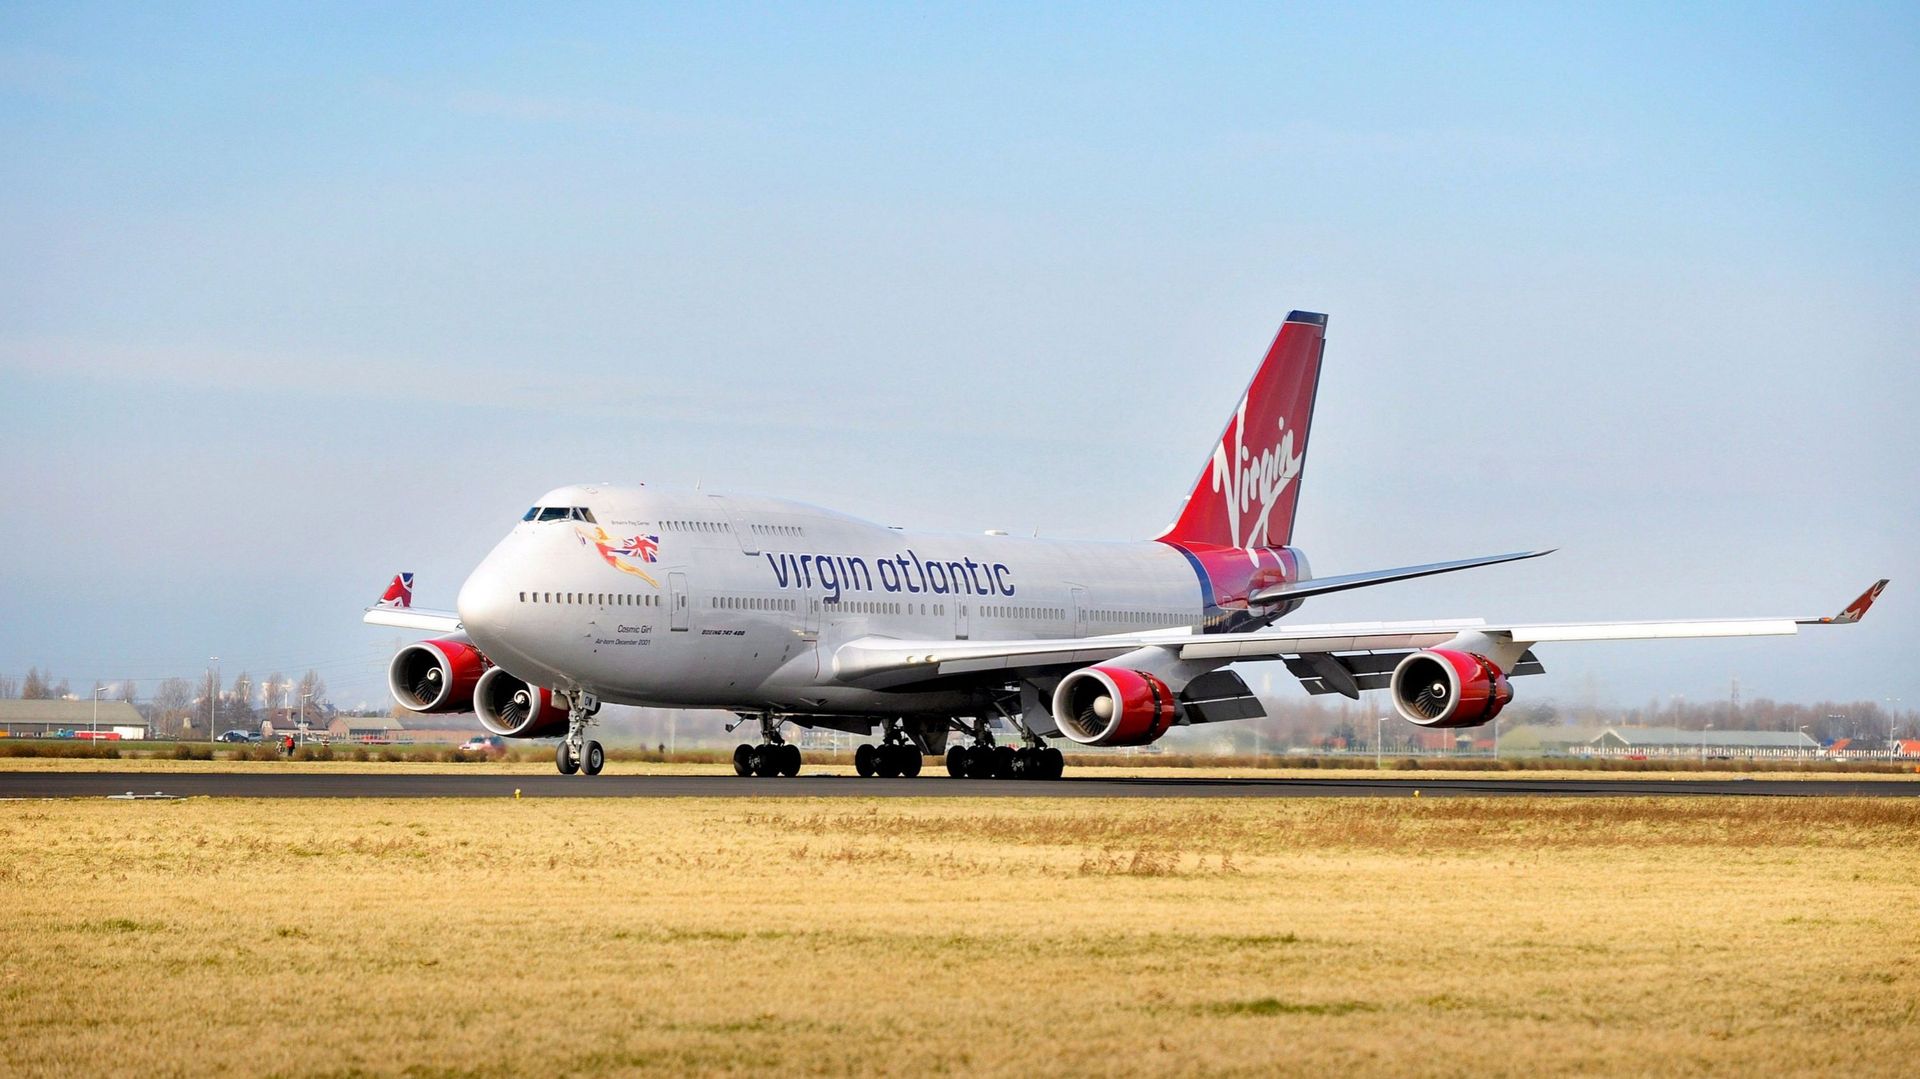 Atterrissage à l'aéroport d'Amsterdam Schiphol d'un Boeing 747 de Virgin Atlantic en provenance de Londres Heathrow et utilisant du biocarburant, le 24 février 2008. (illustration)